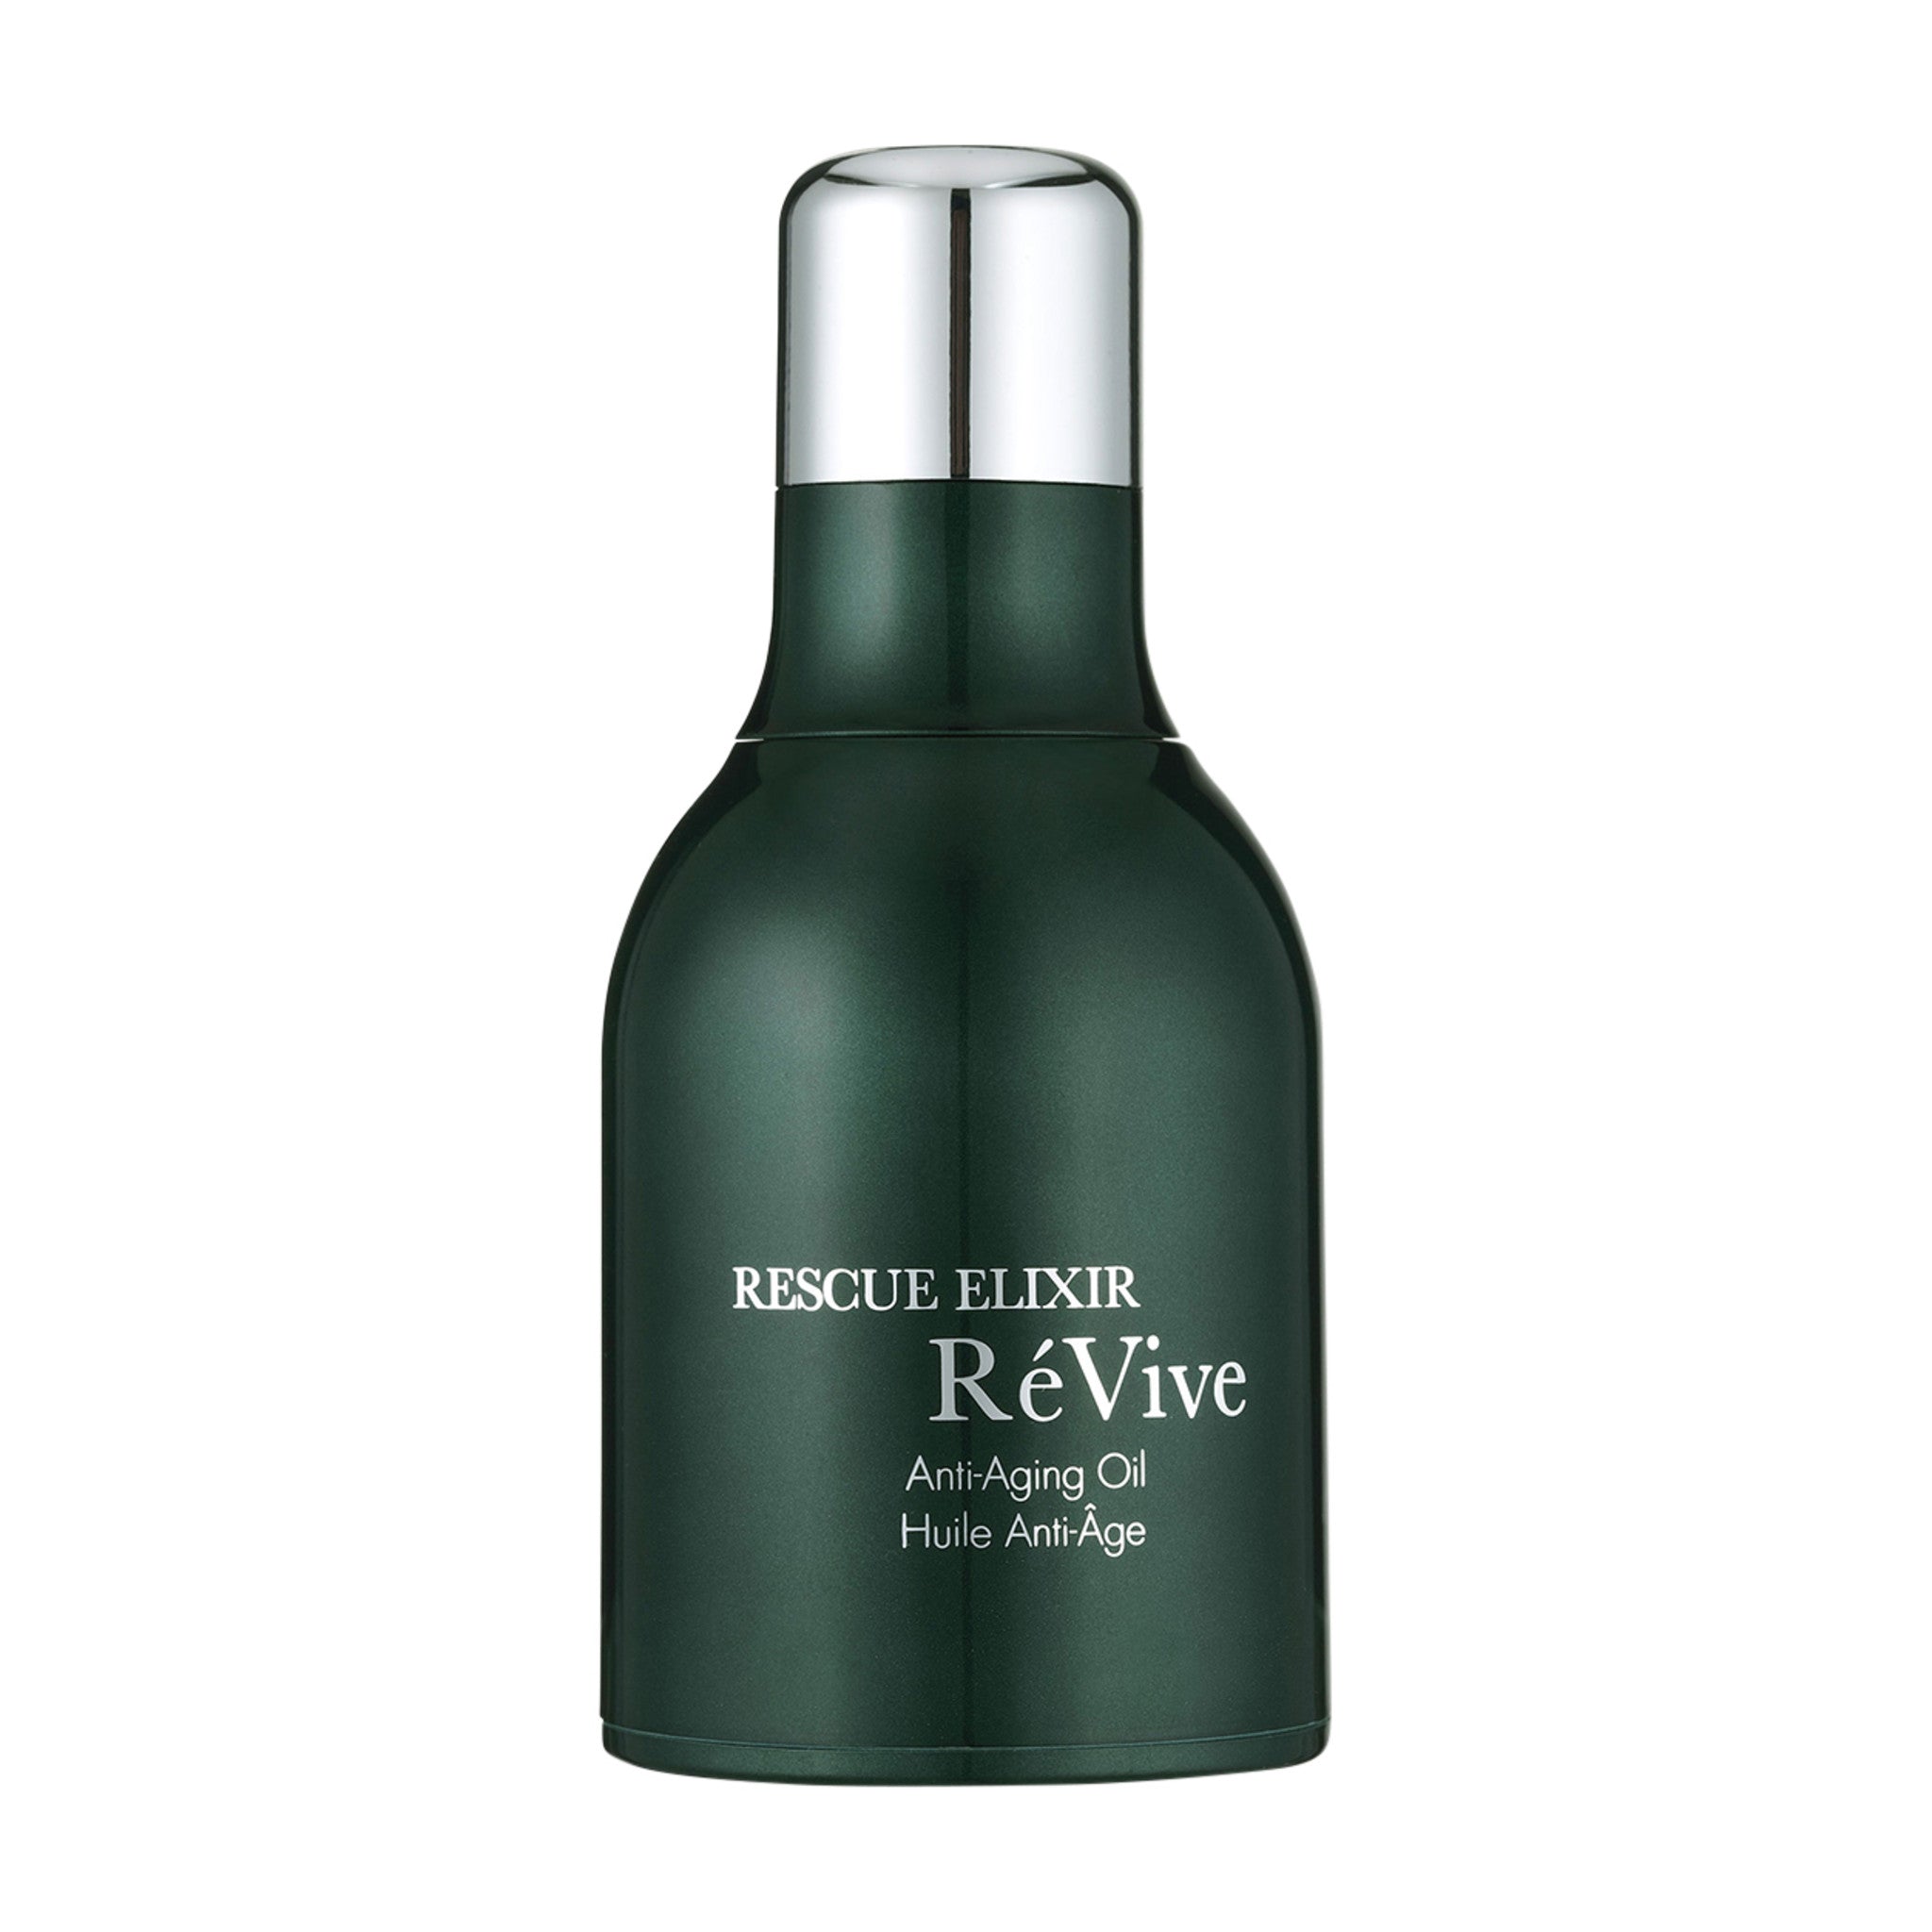 RéVive Rescue Elixir Anti-Aging Oil main image.